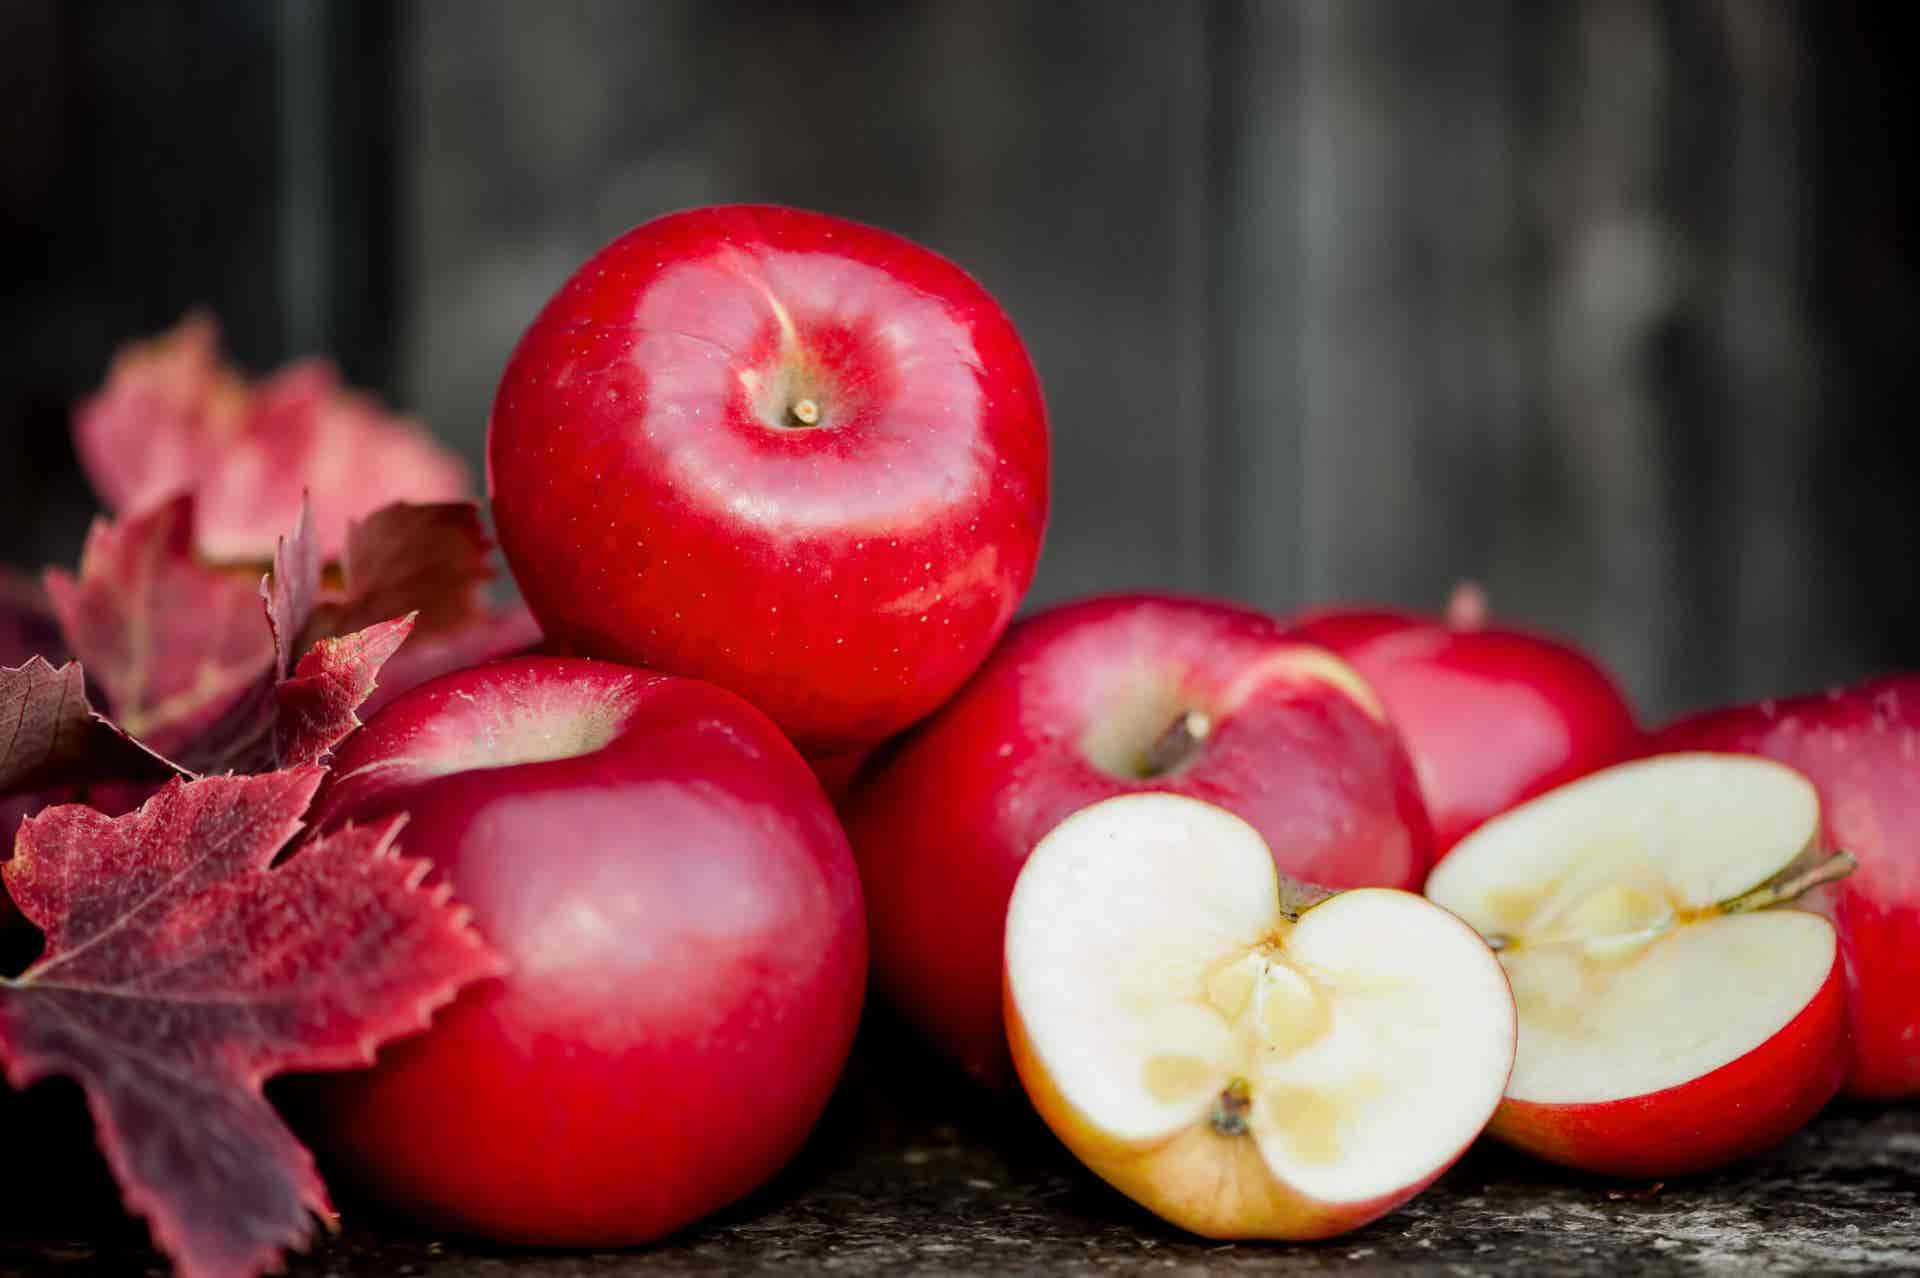 Las manzanas son excelentes para reducir la cintura.